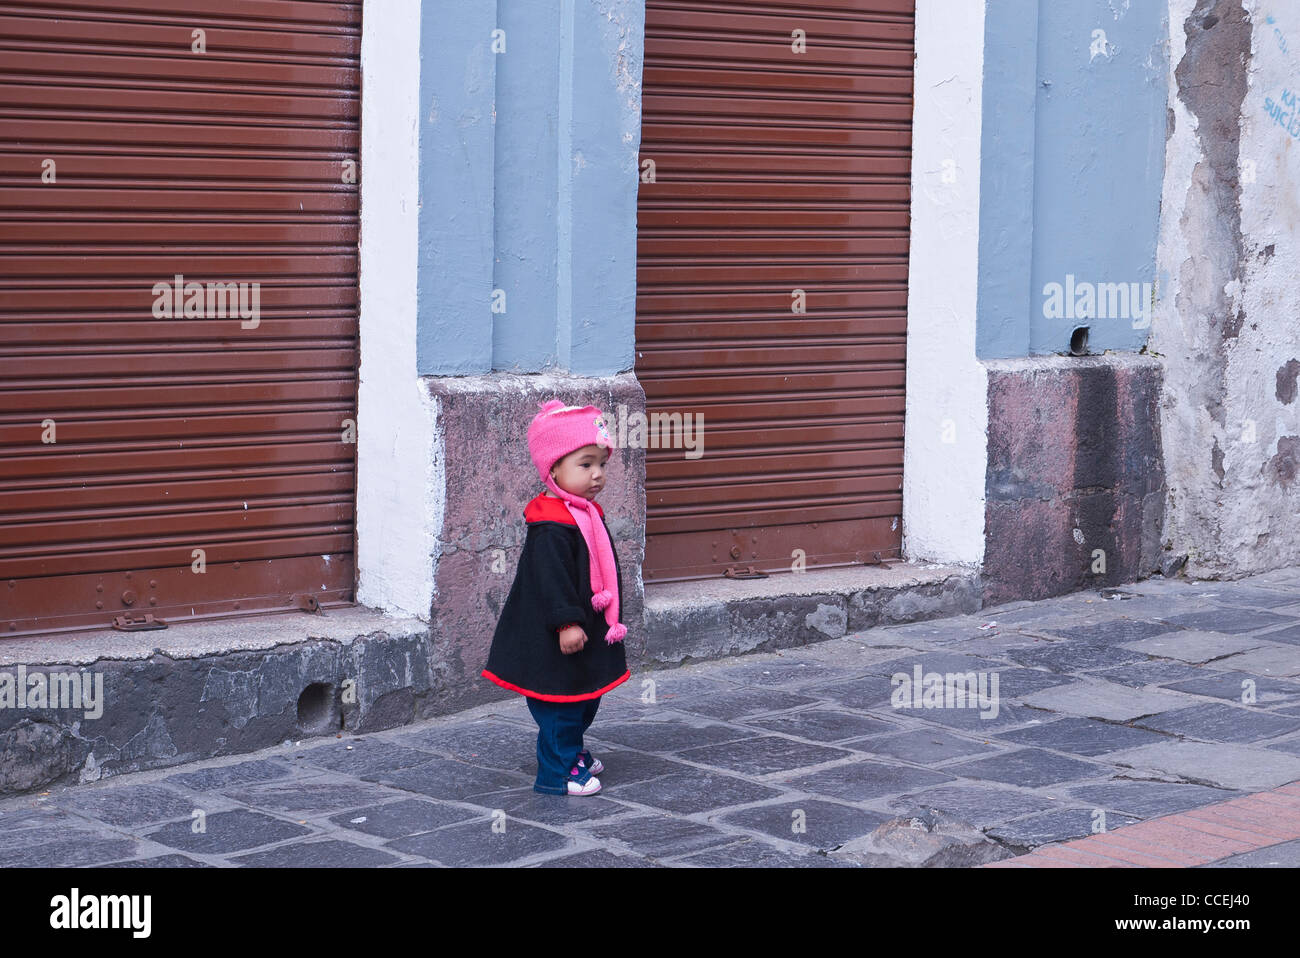 Un enfant se trouve sur un trottoir en face d'un magasin fermé en hiver, vêtements de laine rose, bouchon fantaisie manteau noir avec garniture rouge. Banque D'Images